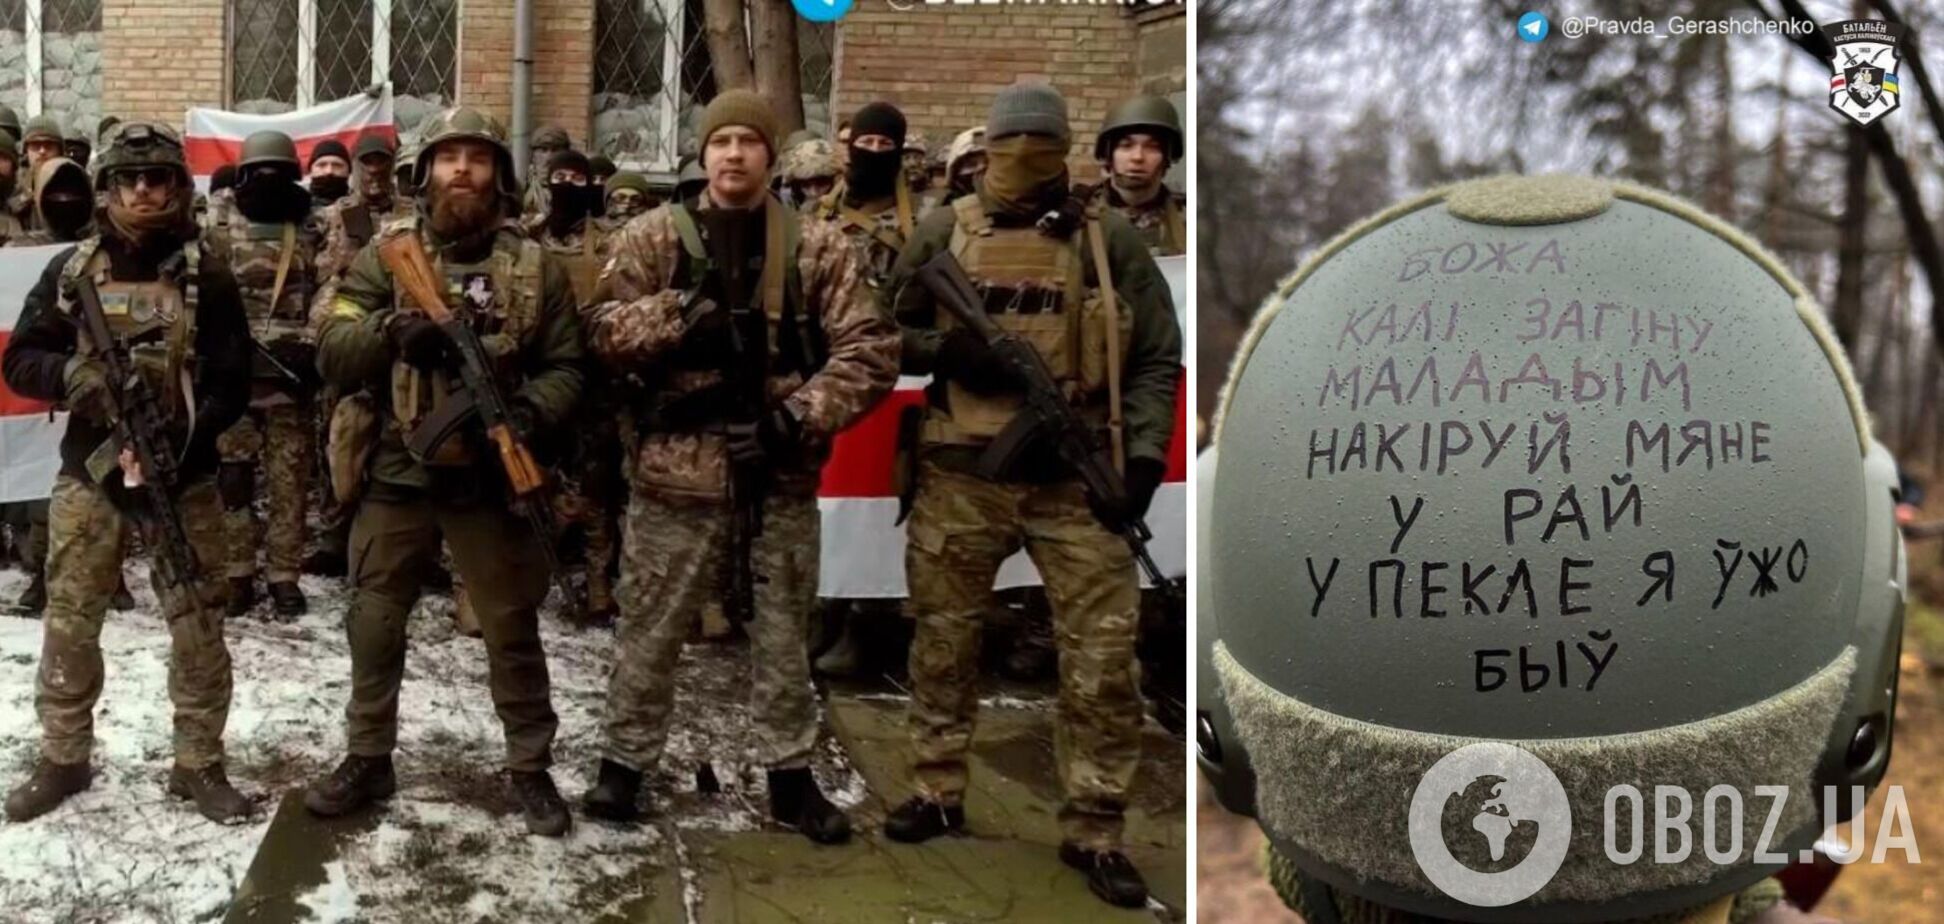 'Боже, якщо я загину, відправь мене до раю, в пеклі я вже був': у мережі показали напис на шоломі добровольця, який воює за Україну. Фото